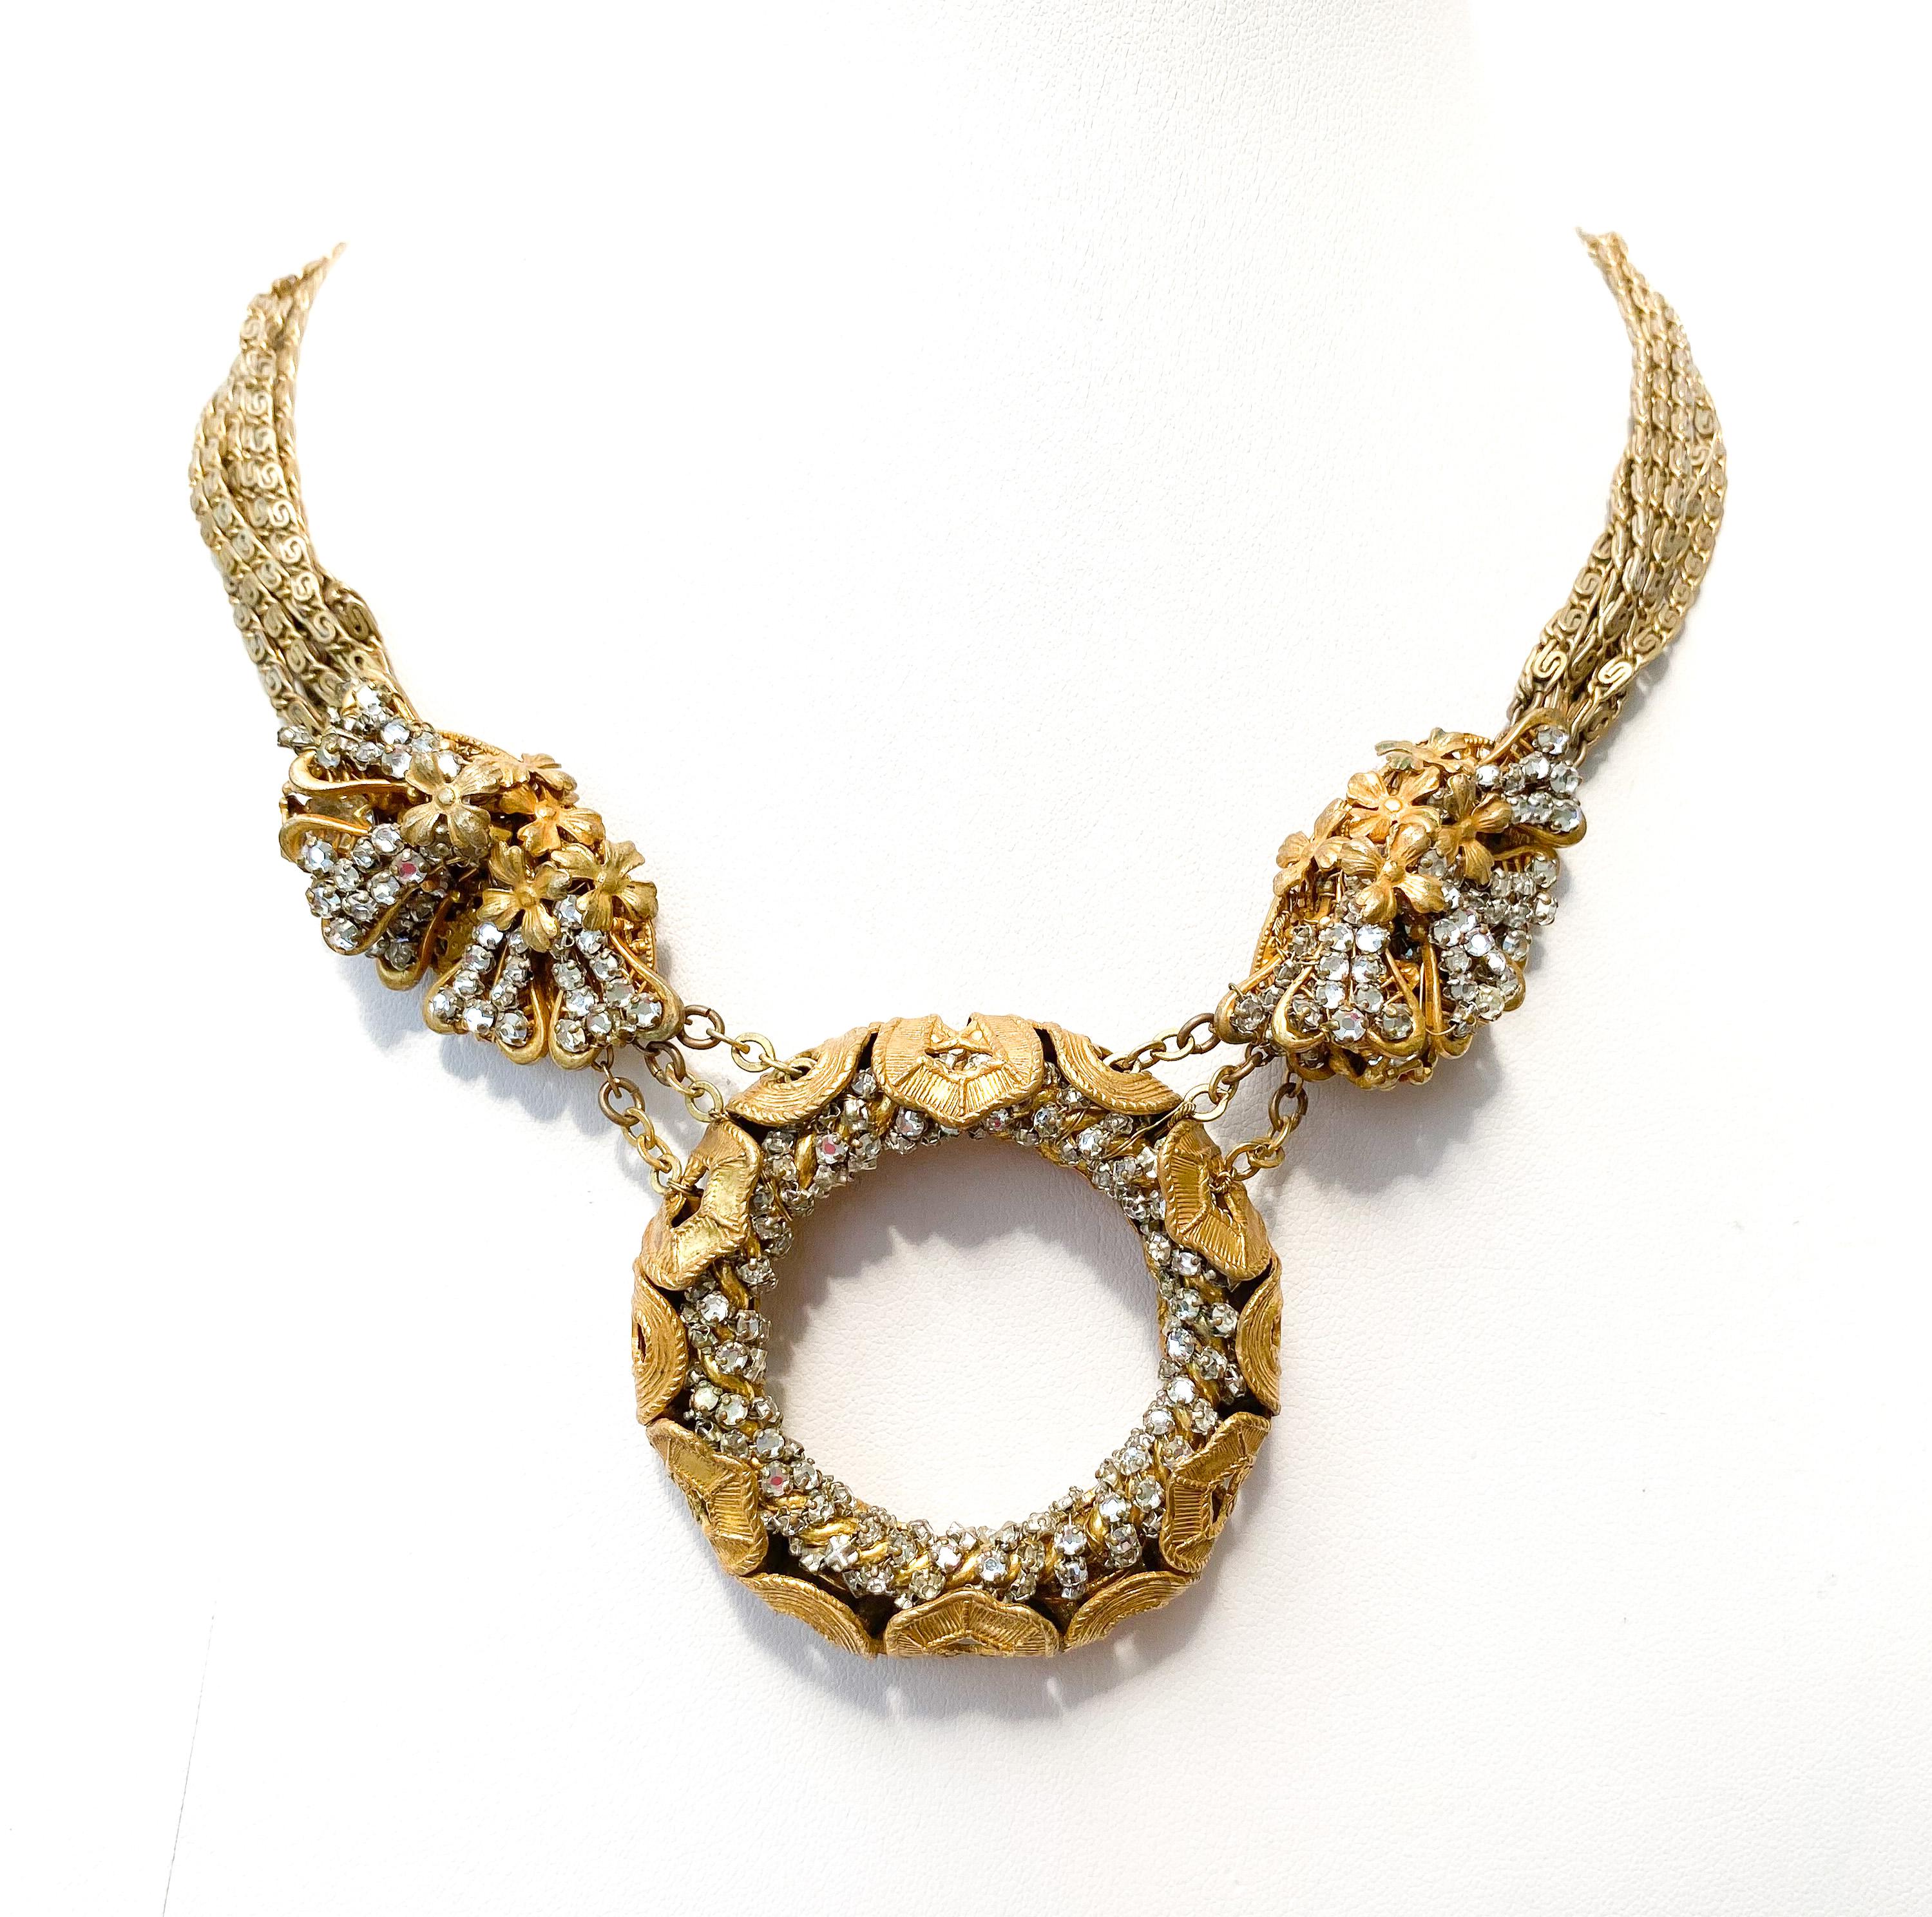 Un splendide collier conçu par le premier et principal designer de Miriam Haskell, Frank HESS. Fabriqué en métal doré et en rose montes (pâtes transparentes à fond plat serties individuellement), il s'agit d'un classique de Haskell vintage. Composé